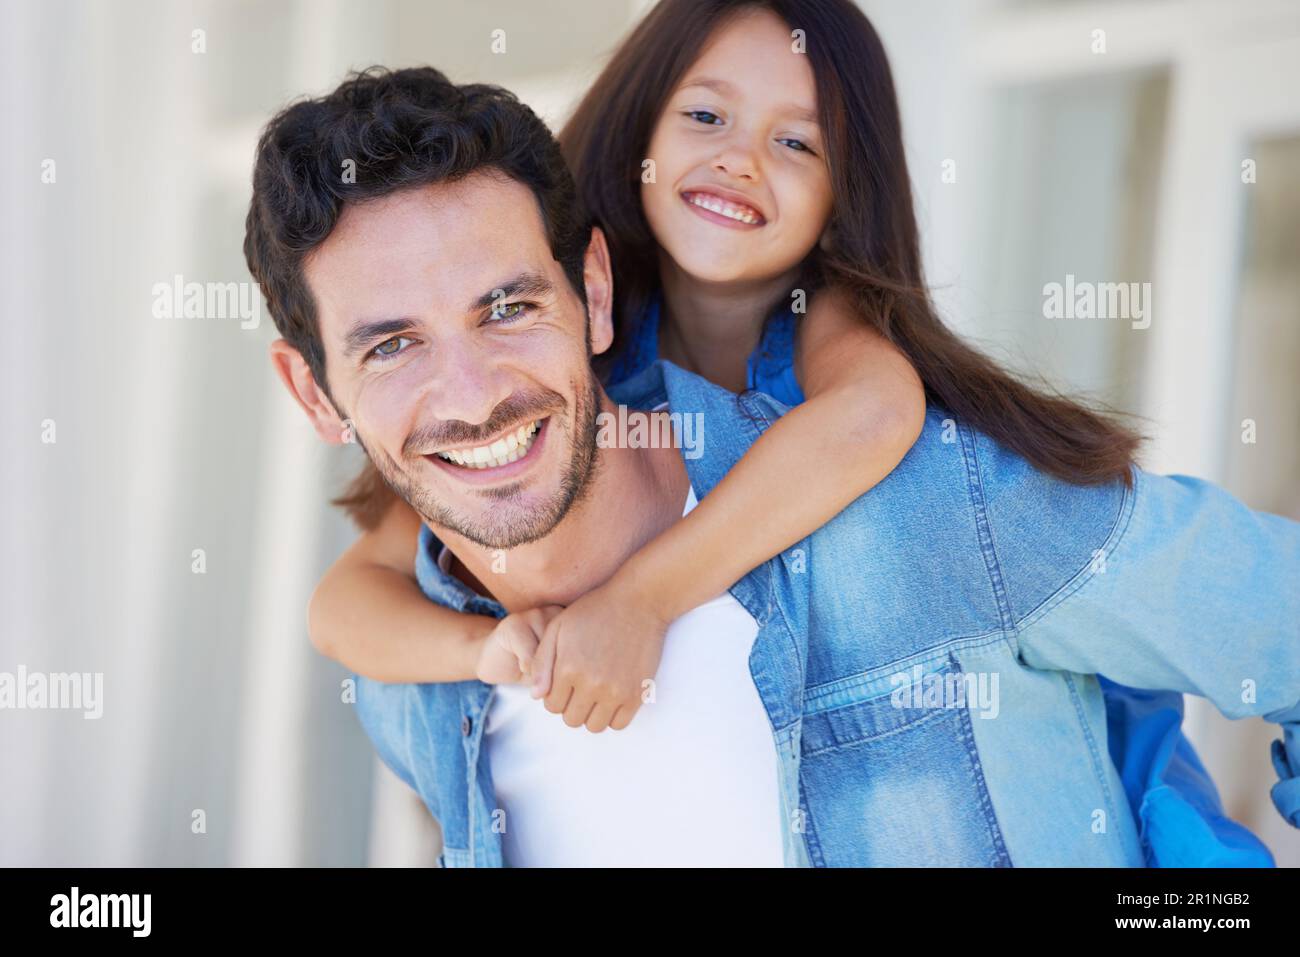 Huckepack-Porträt, Vater und glückliches Kind umarmen Dad für den Vatertag, Spaß und genießen Sie eine schöne gemeinsame Zeit mit der Familie. Glück, Elternschaft und Kinderlächeln Stockfoto